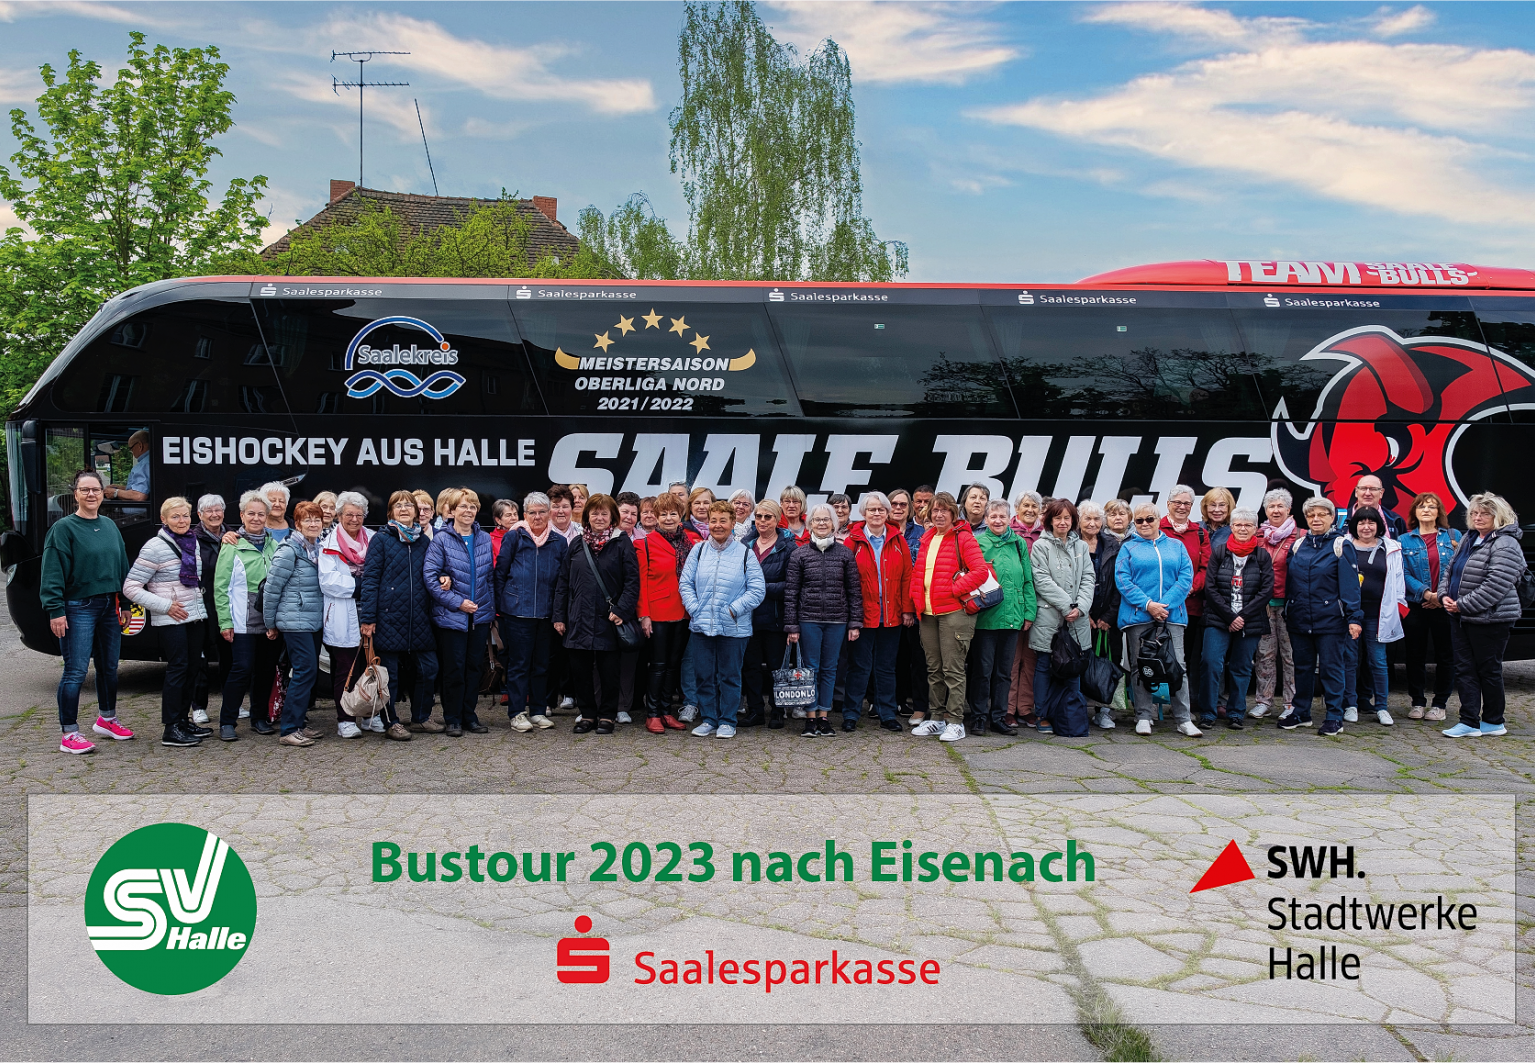 Bustour nach Eisenach